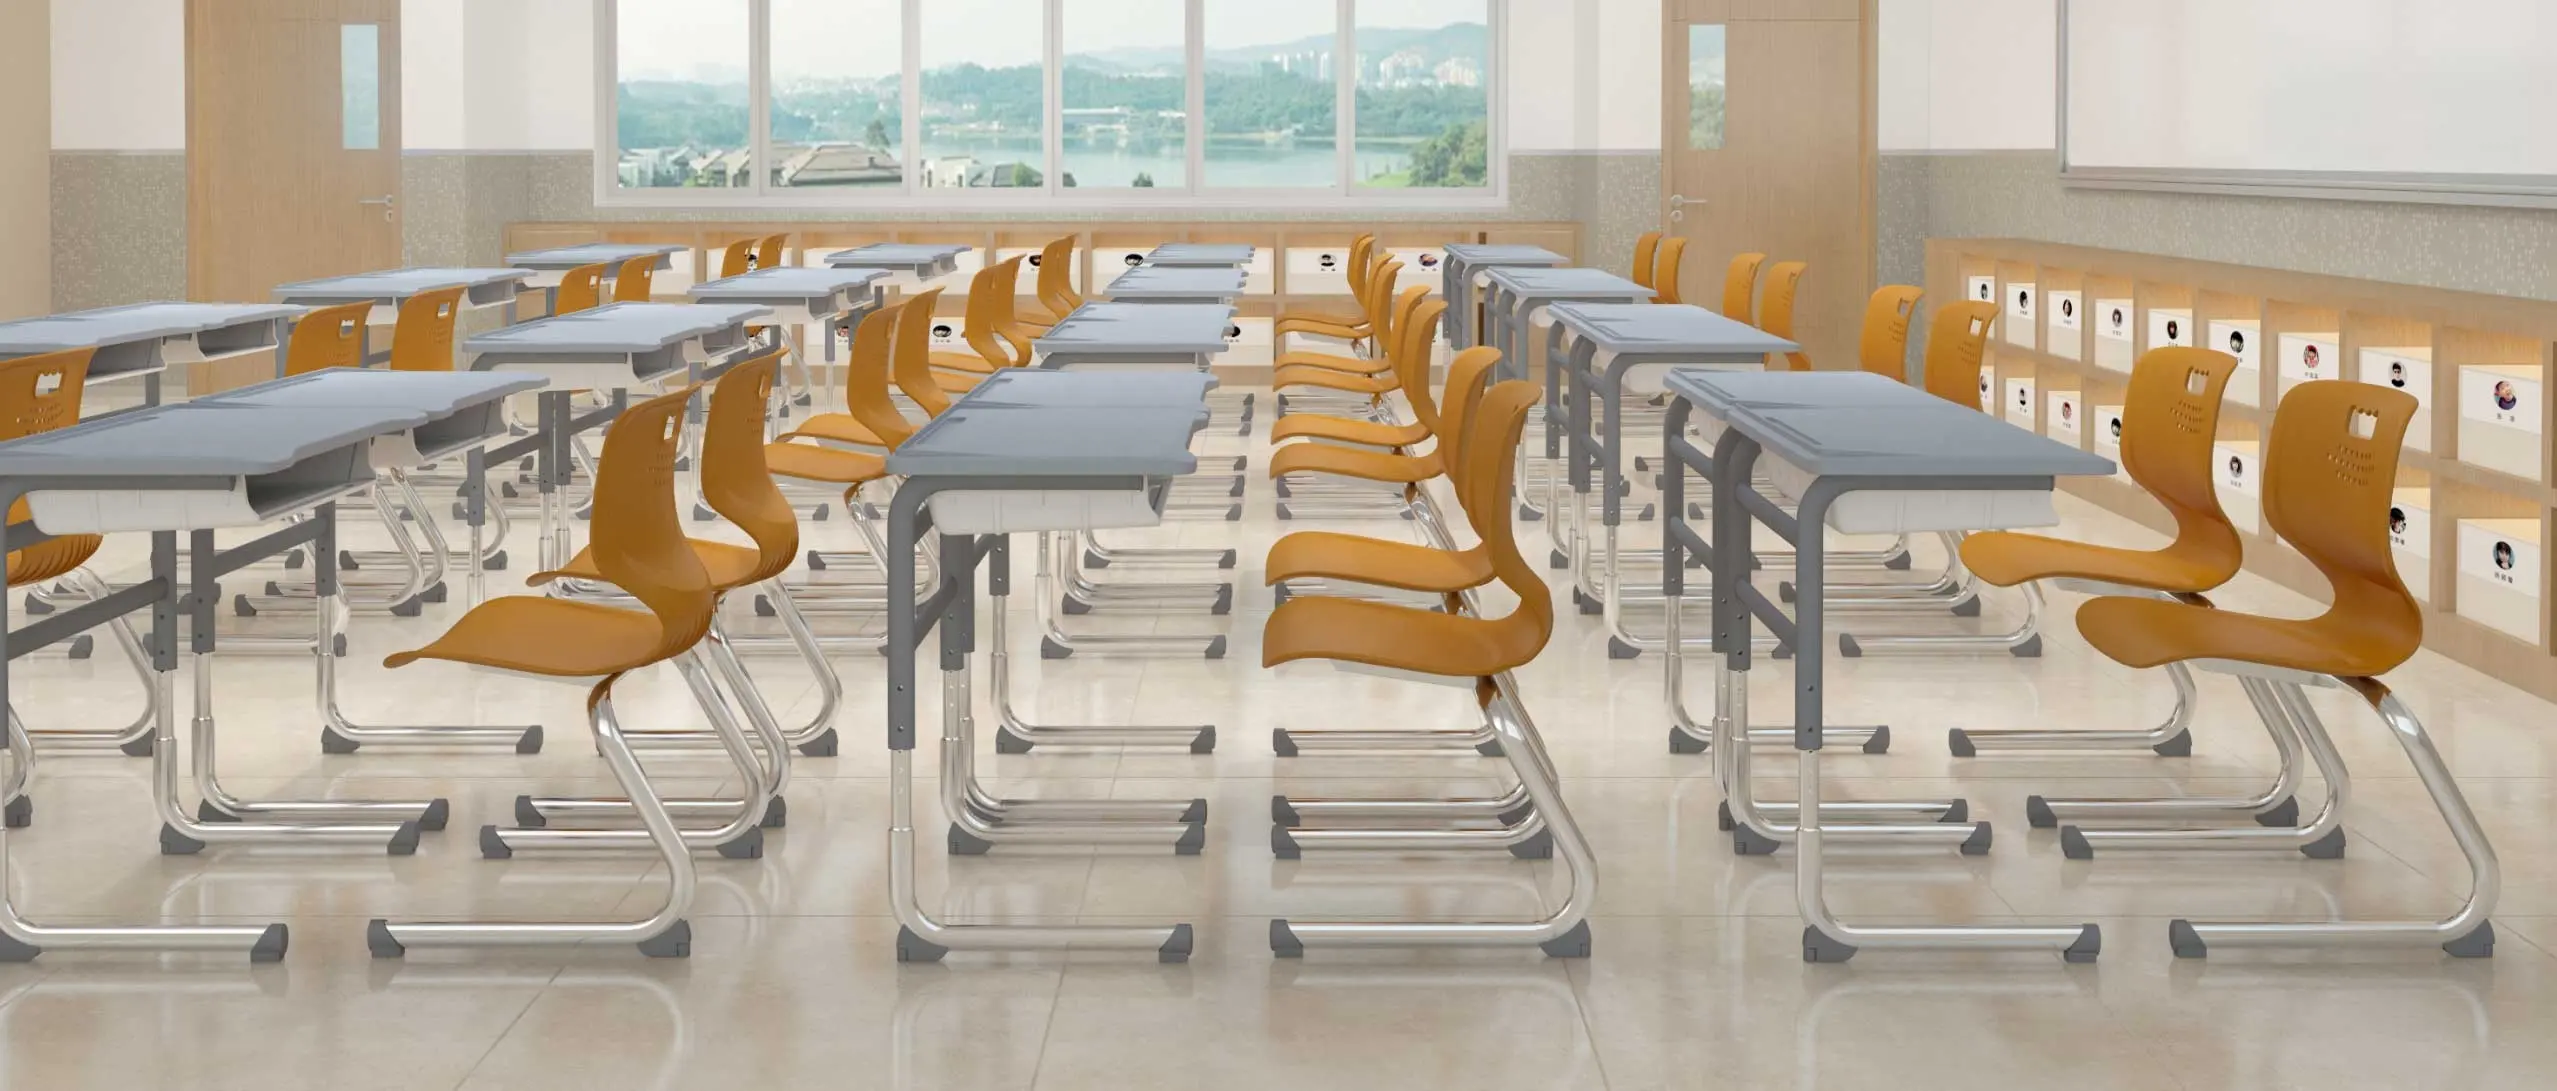 Mesa e cadeira para estudantes, mesa de estudo escolar com altura ajustável, mobília de metal e plástico único para sala de aula, com cadeiras